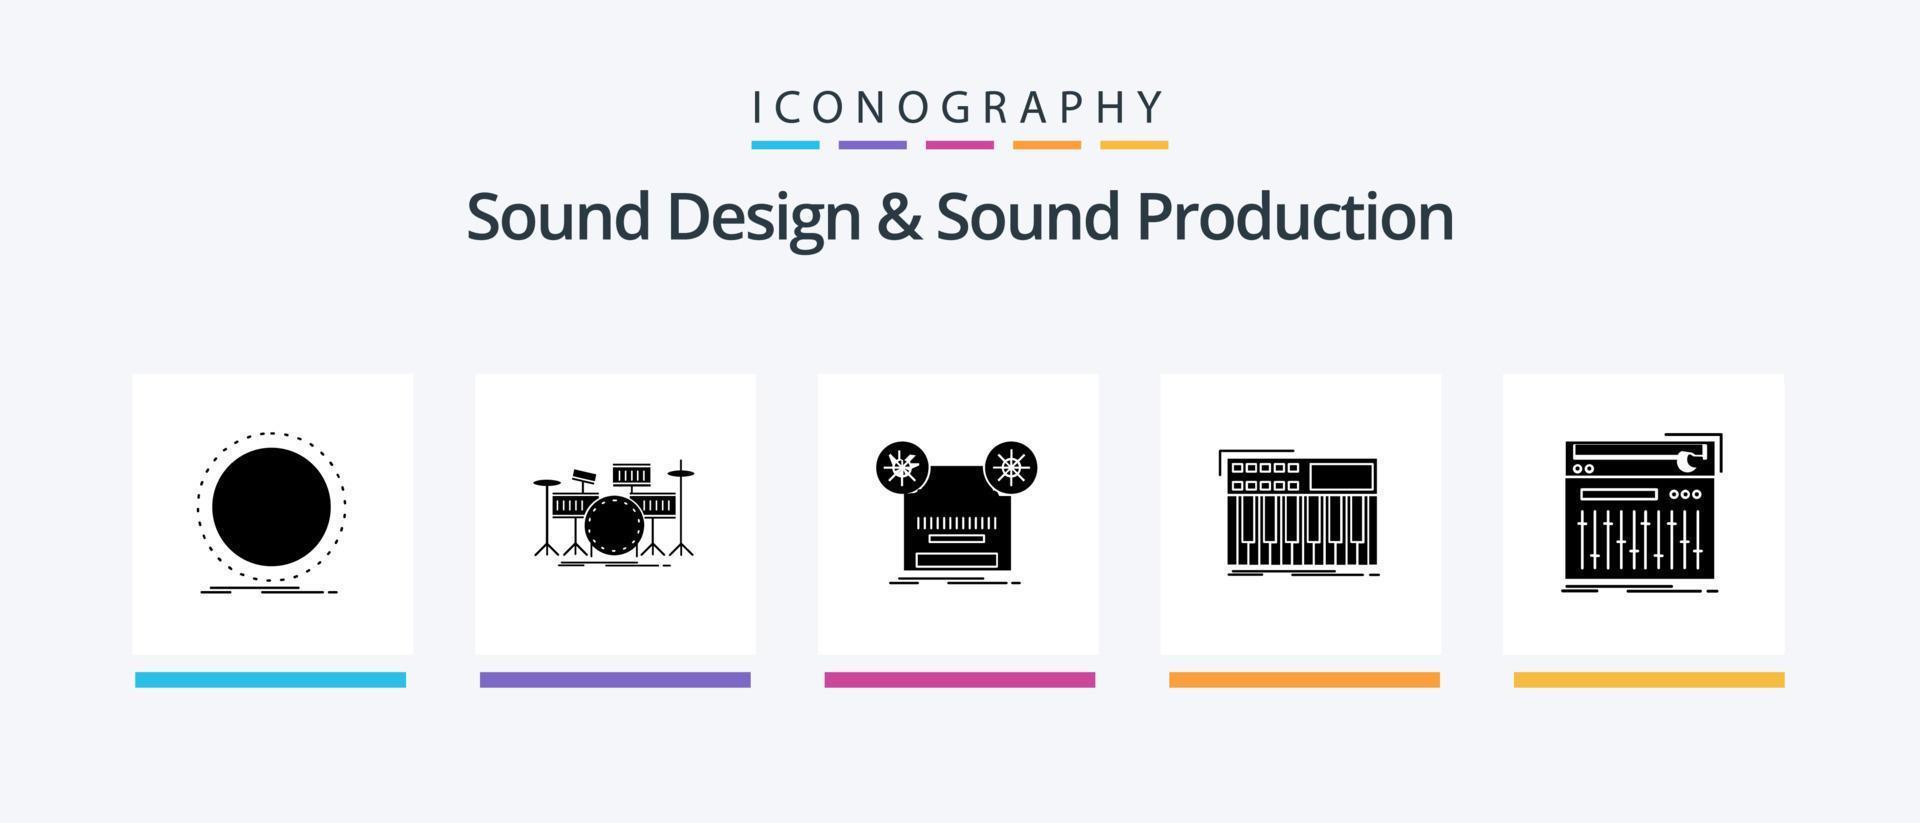 diseño de sonido y paquete de iconos de glifo 5 de producción de sonido que incluye midi. sintetizador equipo. música. retro diseño de iconos creativos vector